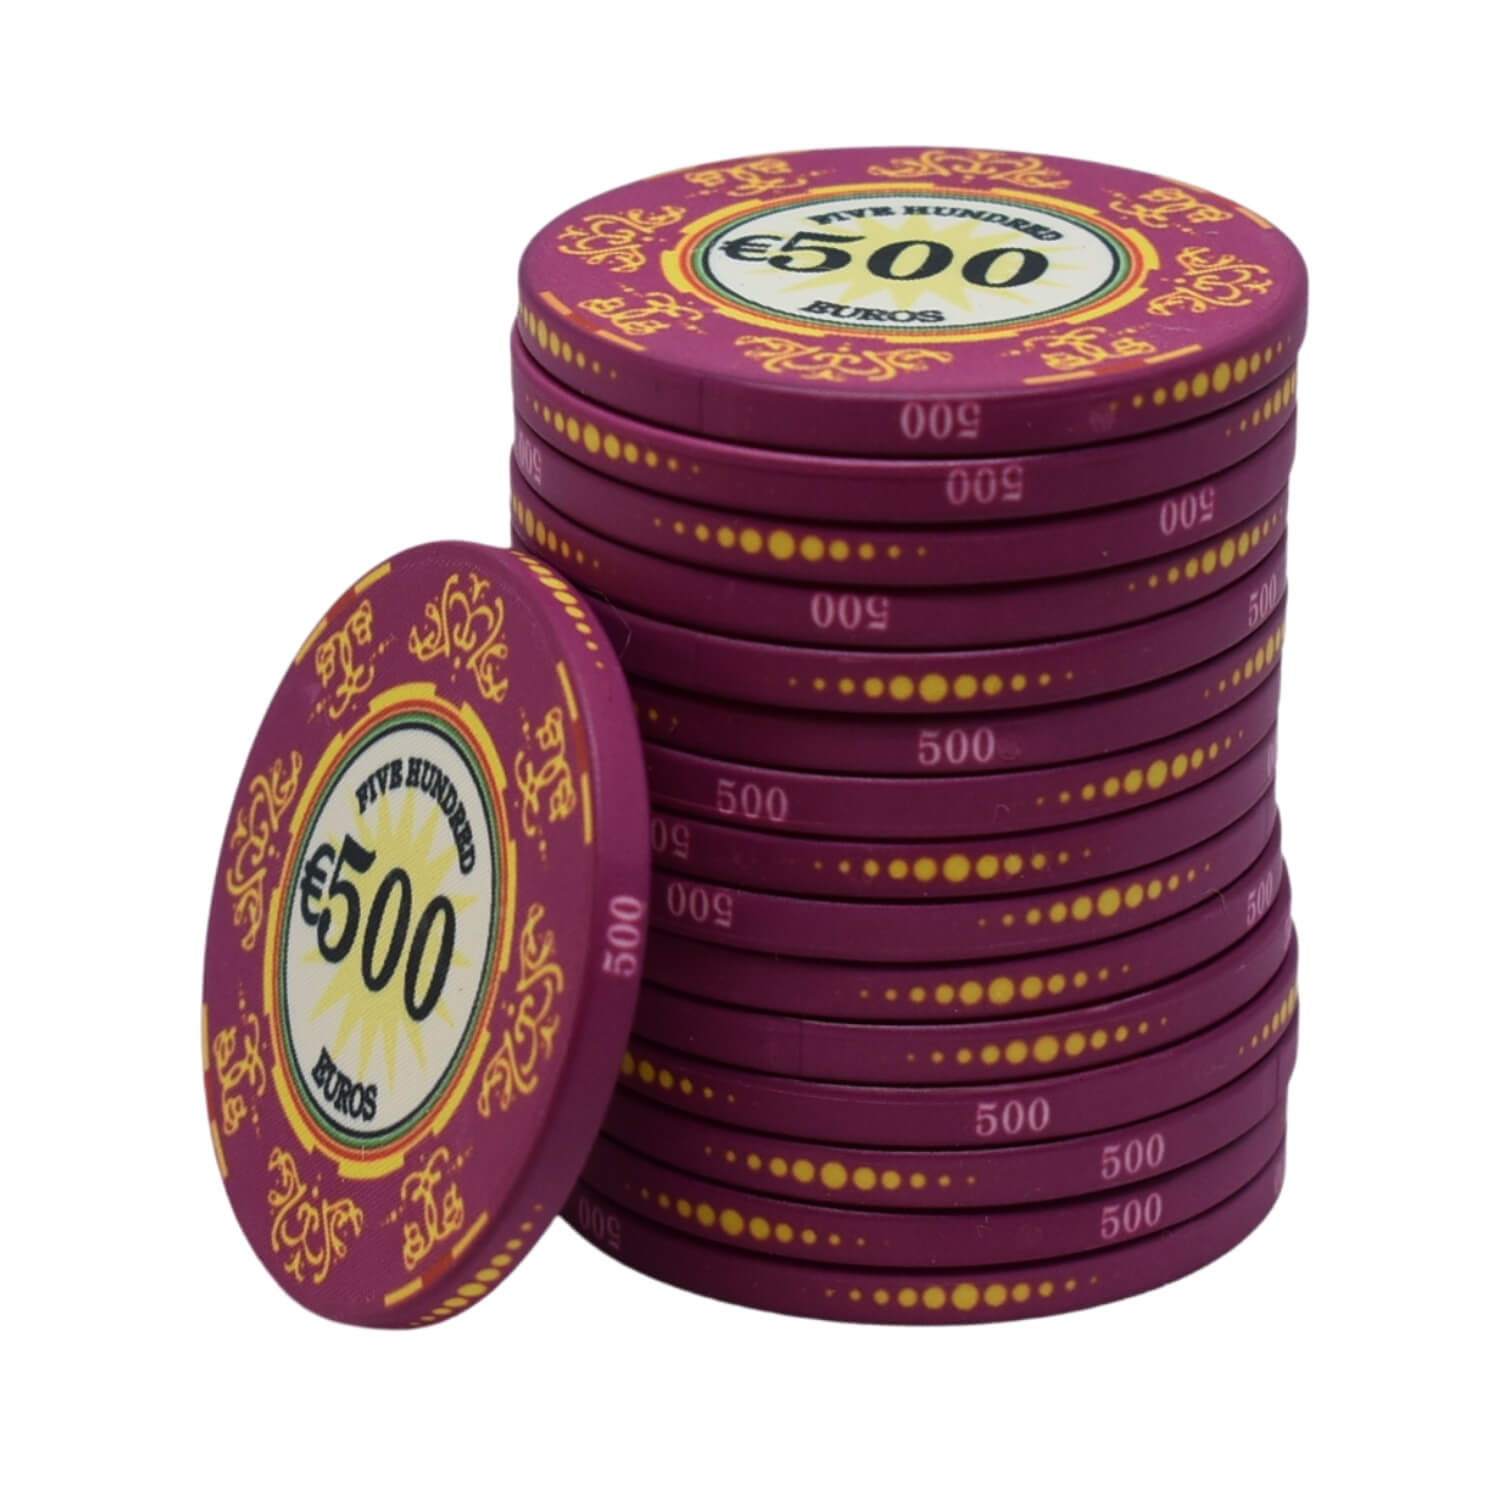 Jetzt können Sie Ihr beste pokerartikel sicher erstellen lassen